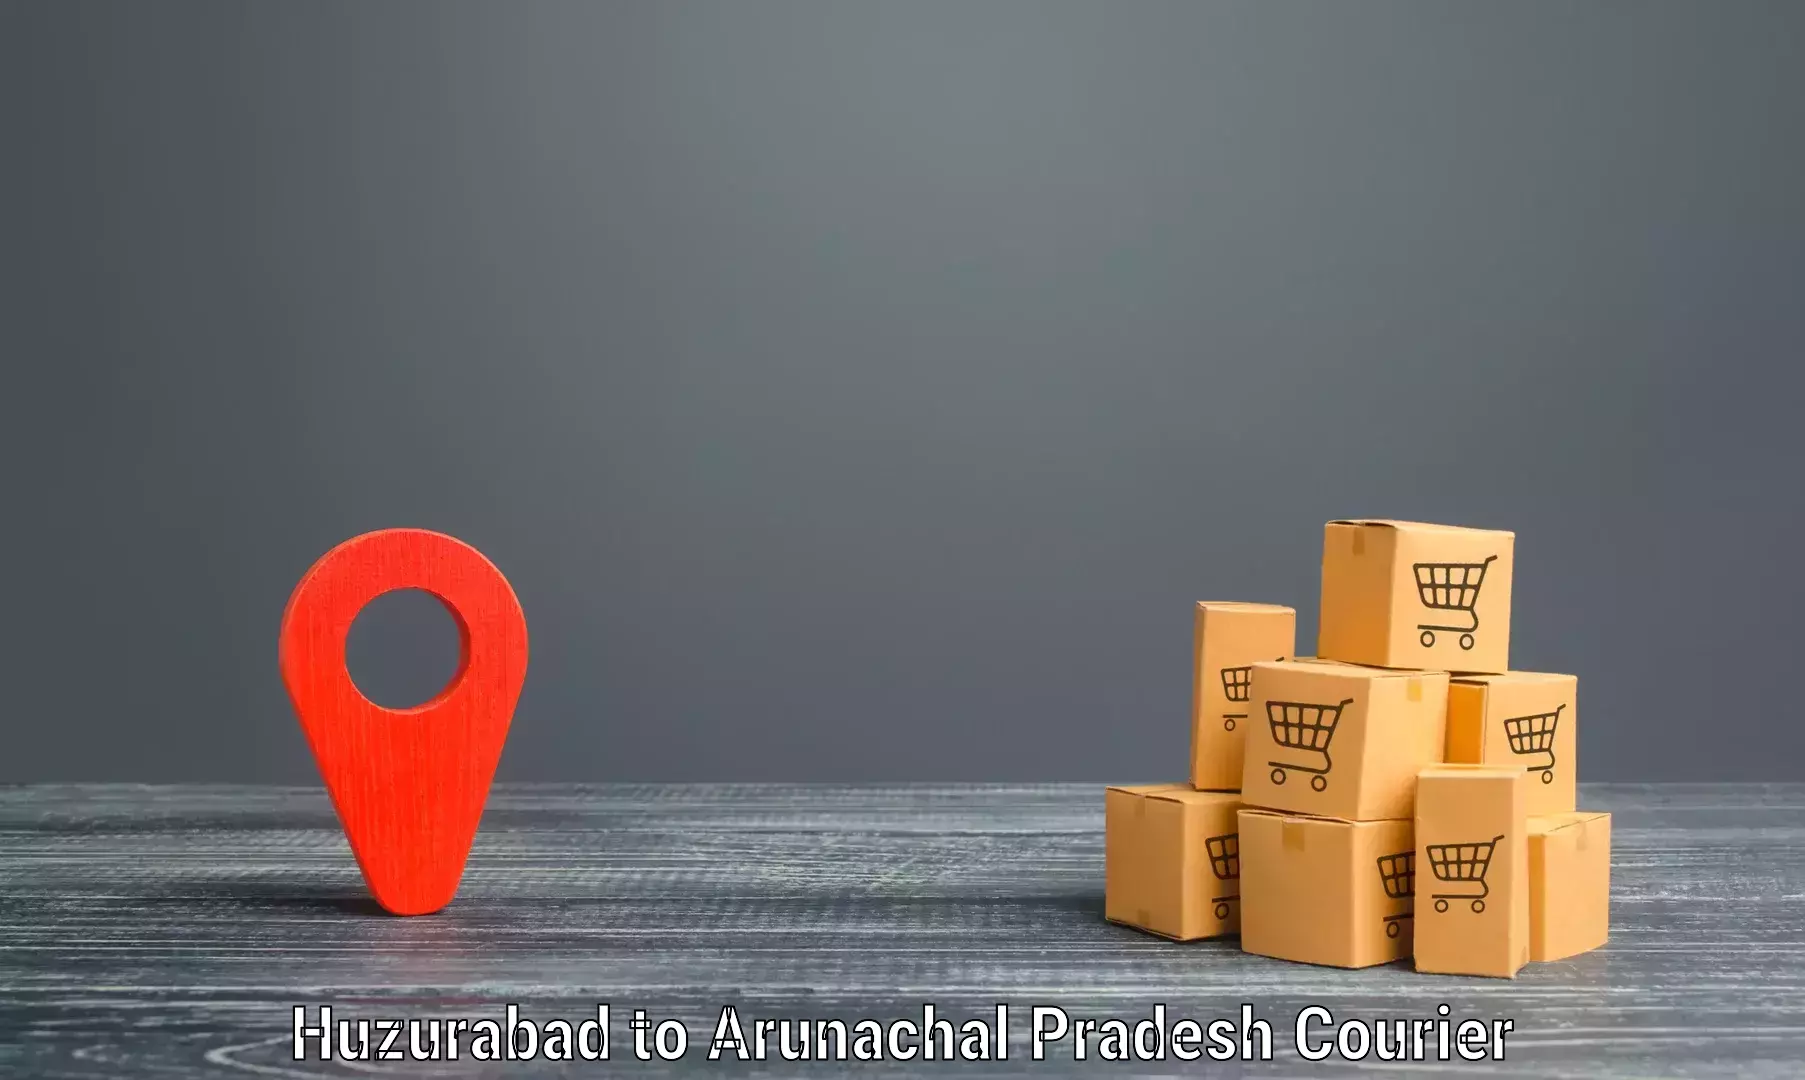 User-friendly delivery service Huzurabad to Arunachal Pradesh